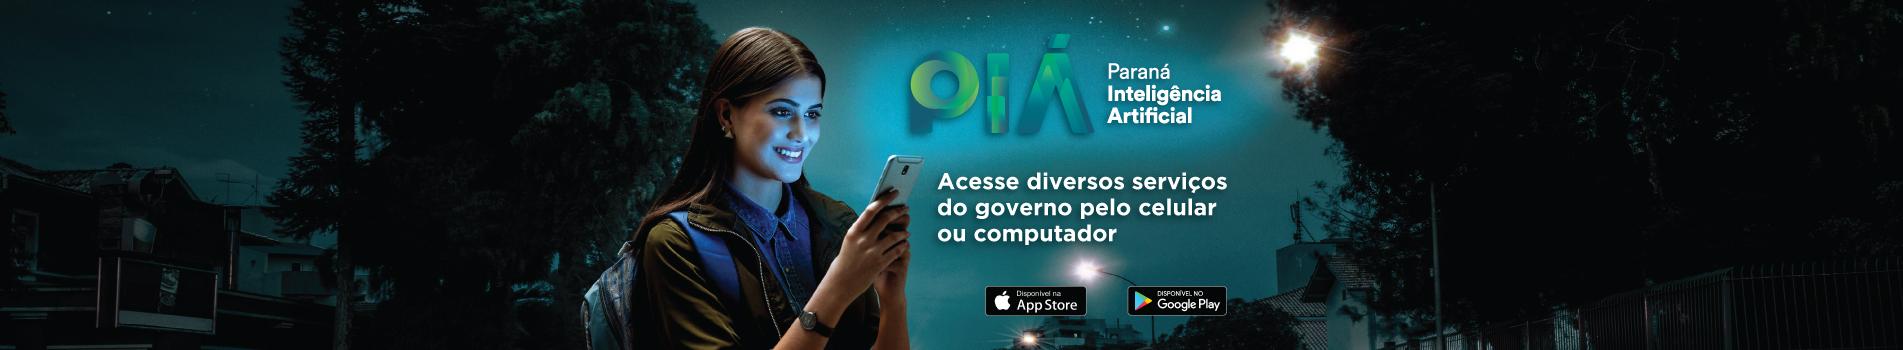 PIÁ - Paraná Inteligência Artificial